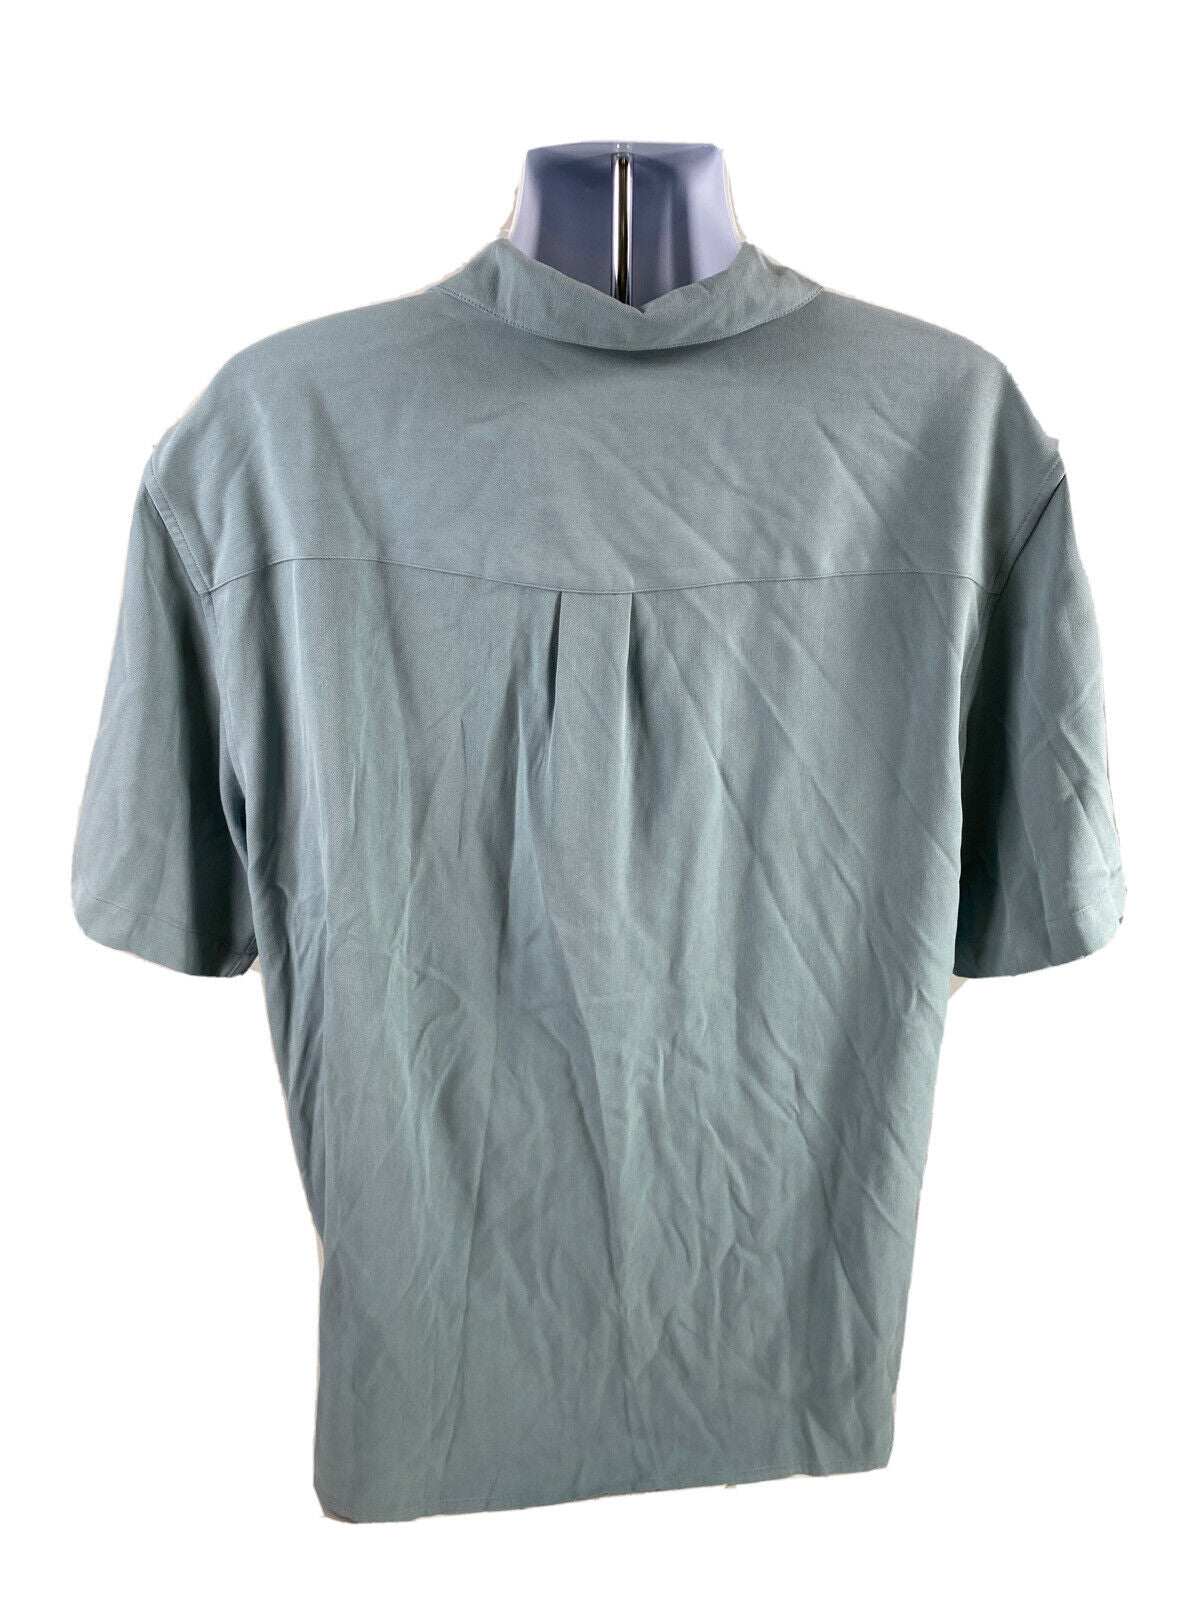 NEW Jos A Bank Men's Blue 100% Silk Short Sleeve Button Up Shirt - M